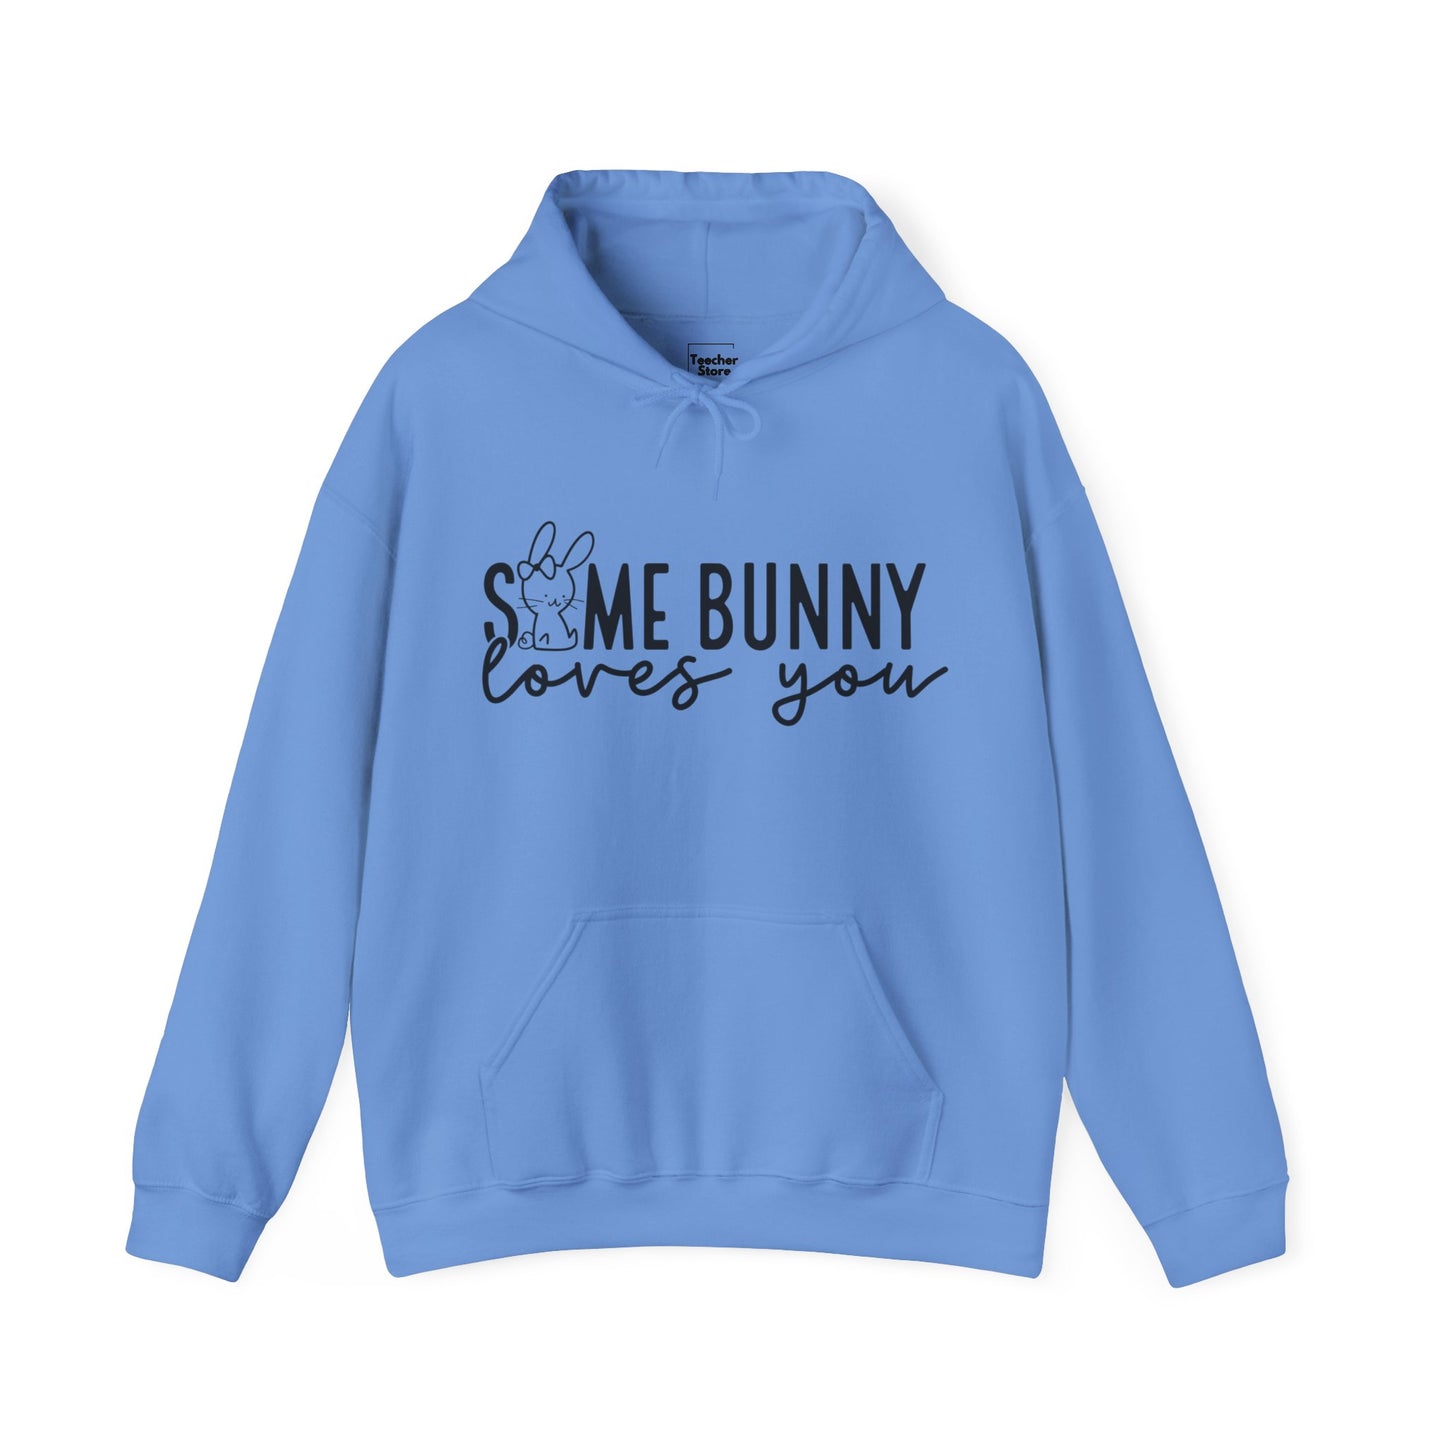 Some Bunny Hooded Sweatshirt